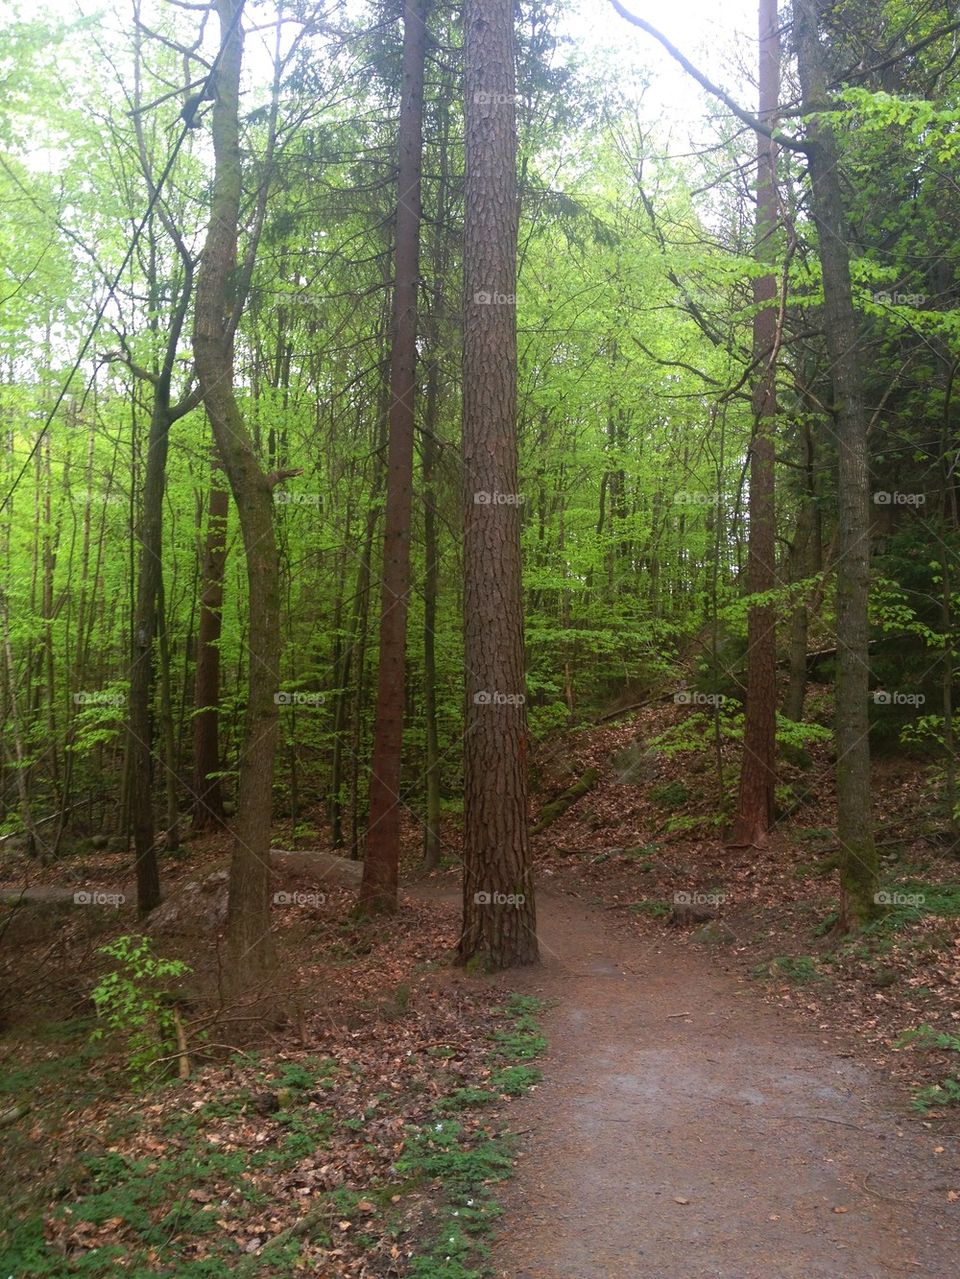 Footpath through forest